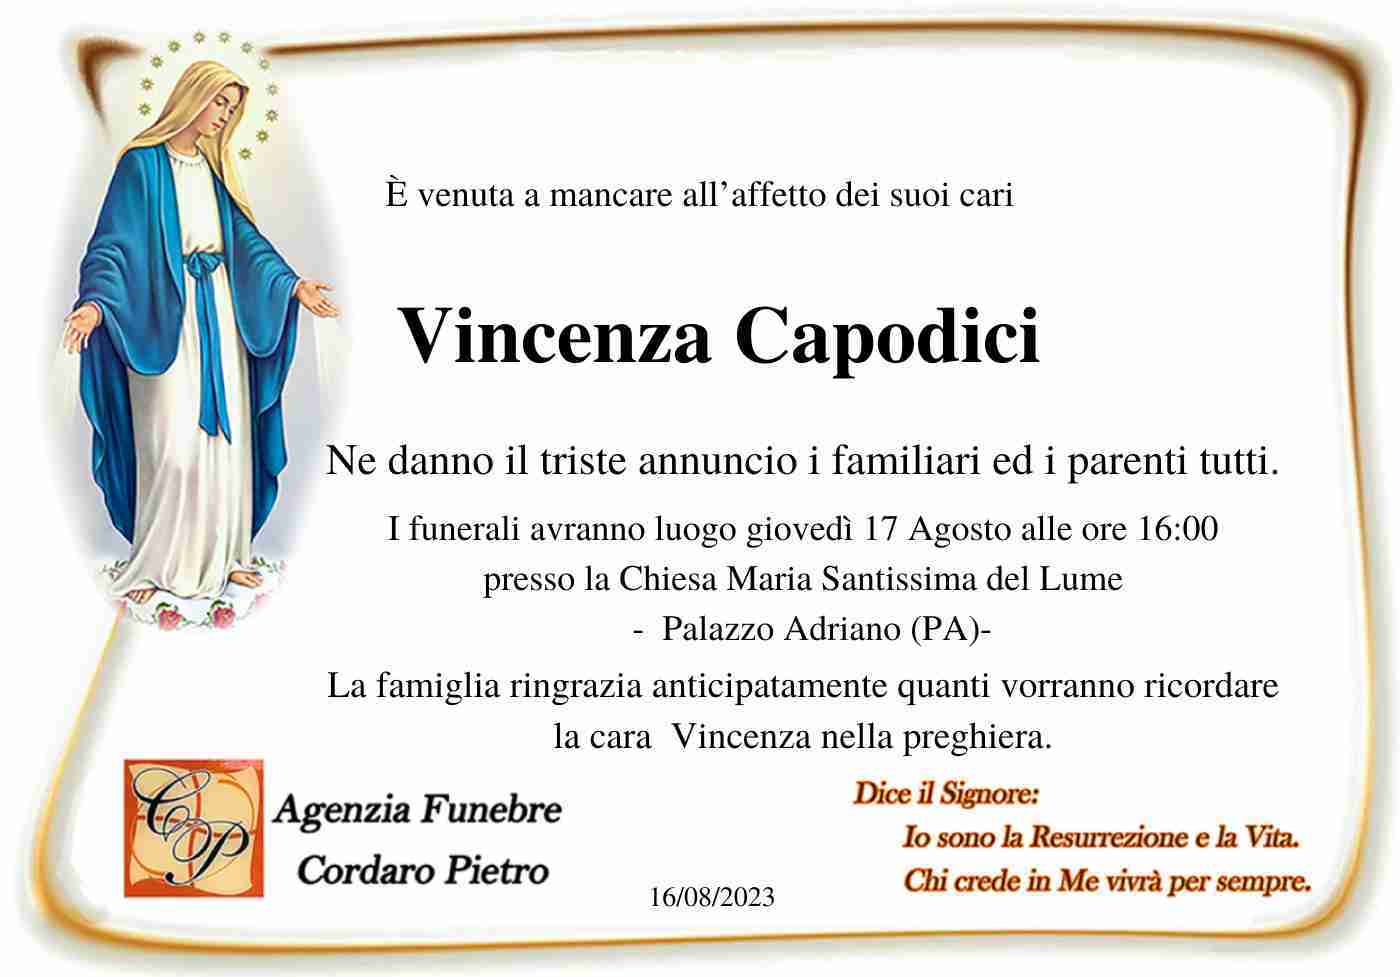 Vincenza Capodici